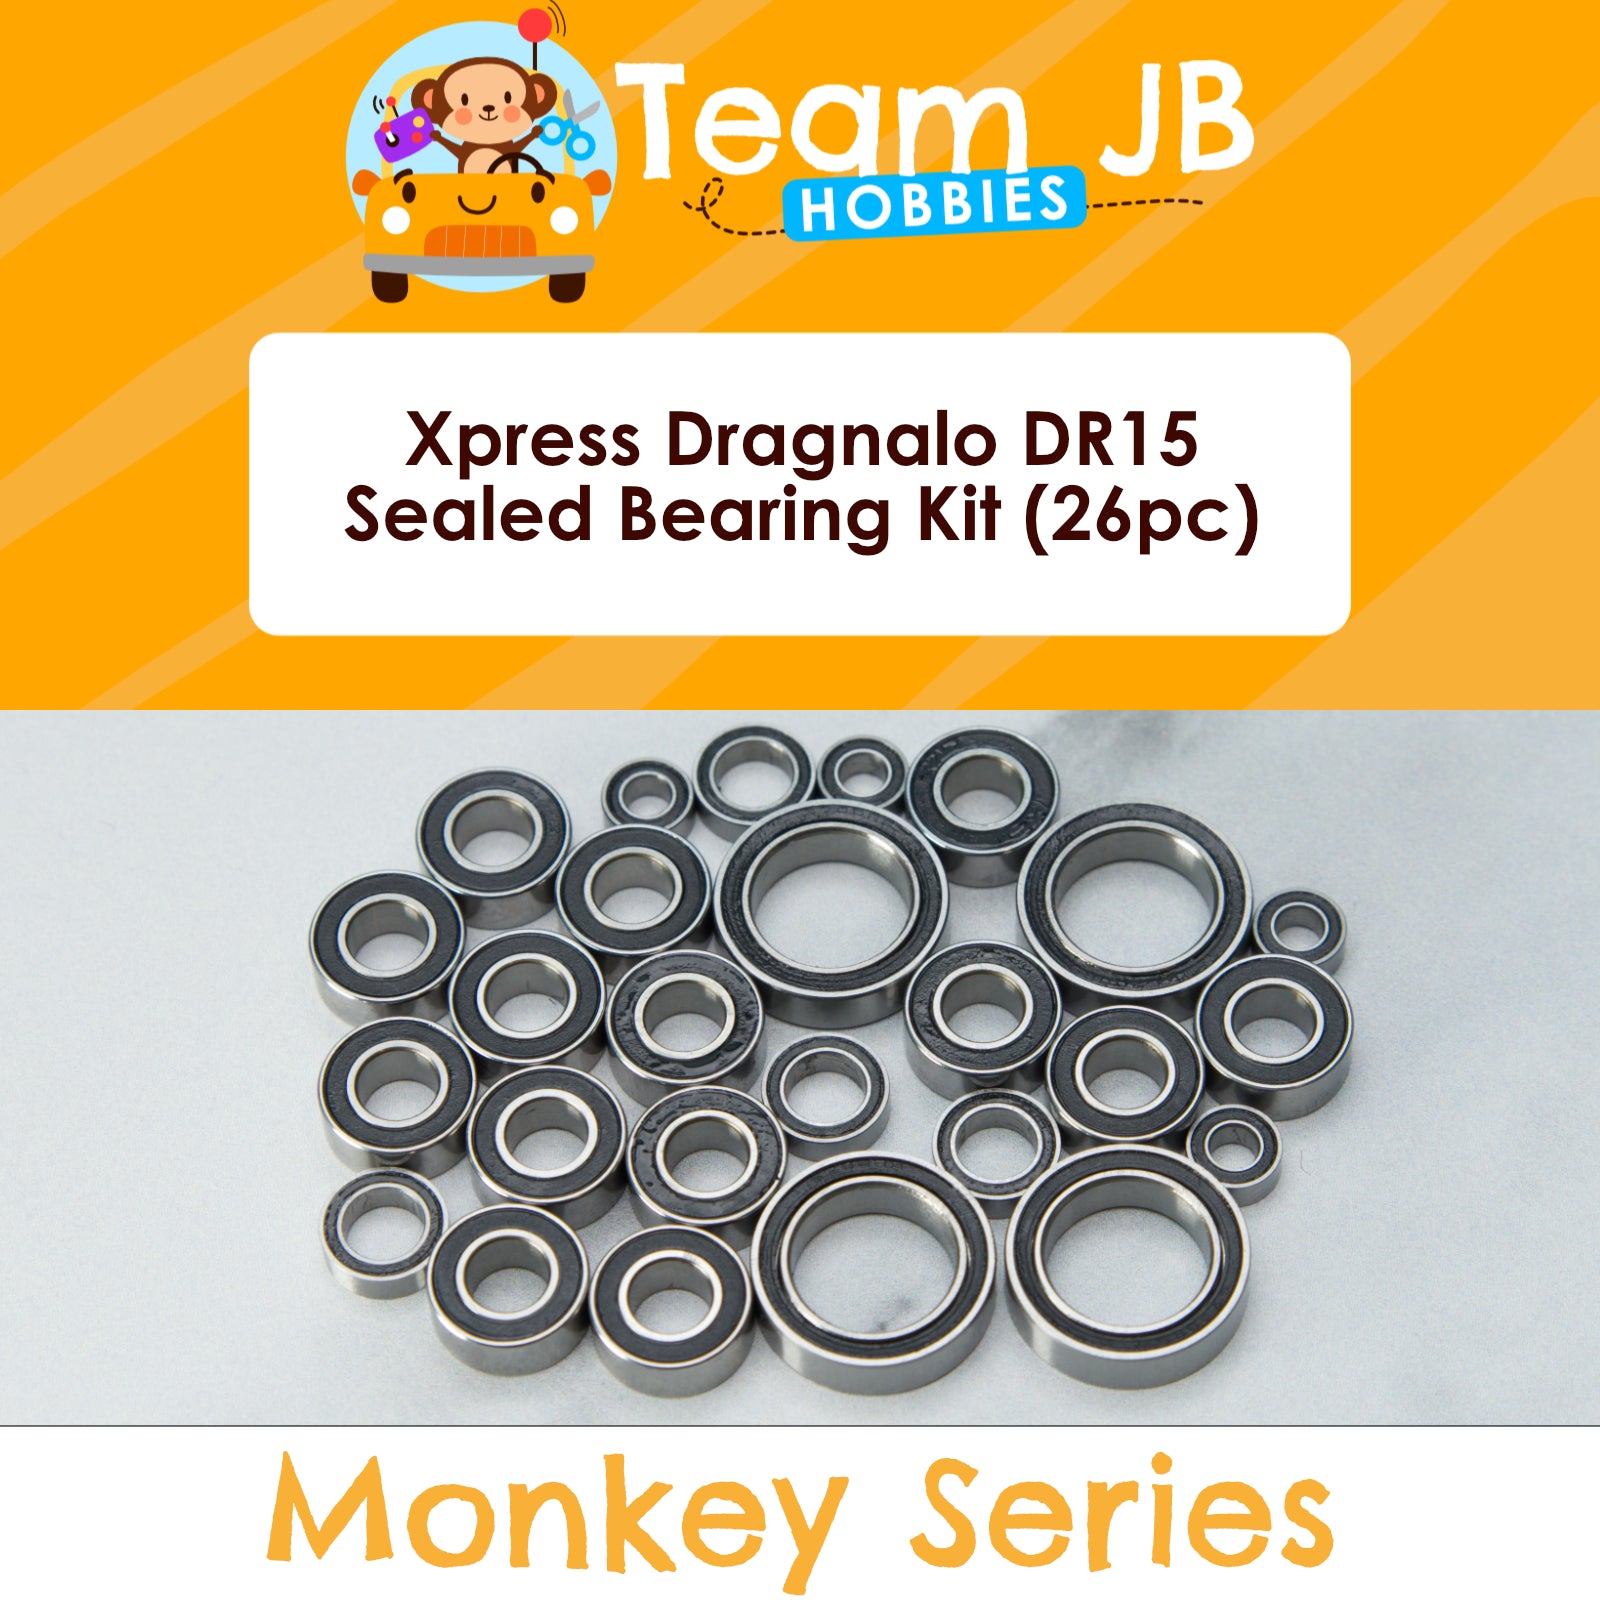 Xpress Dragnalo DR15 - Sealed Bearing Kit